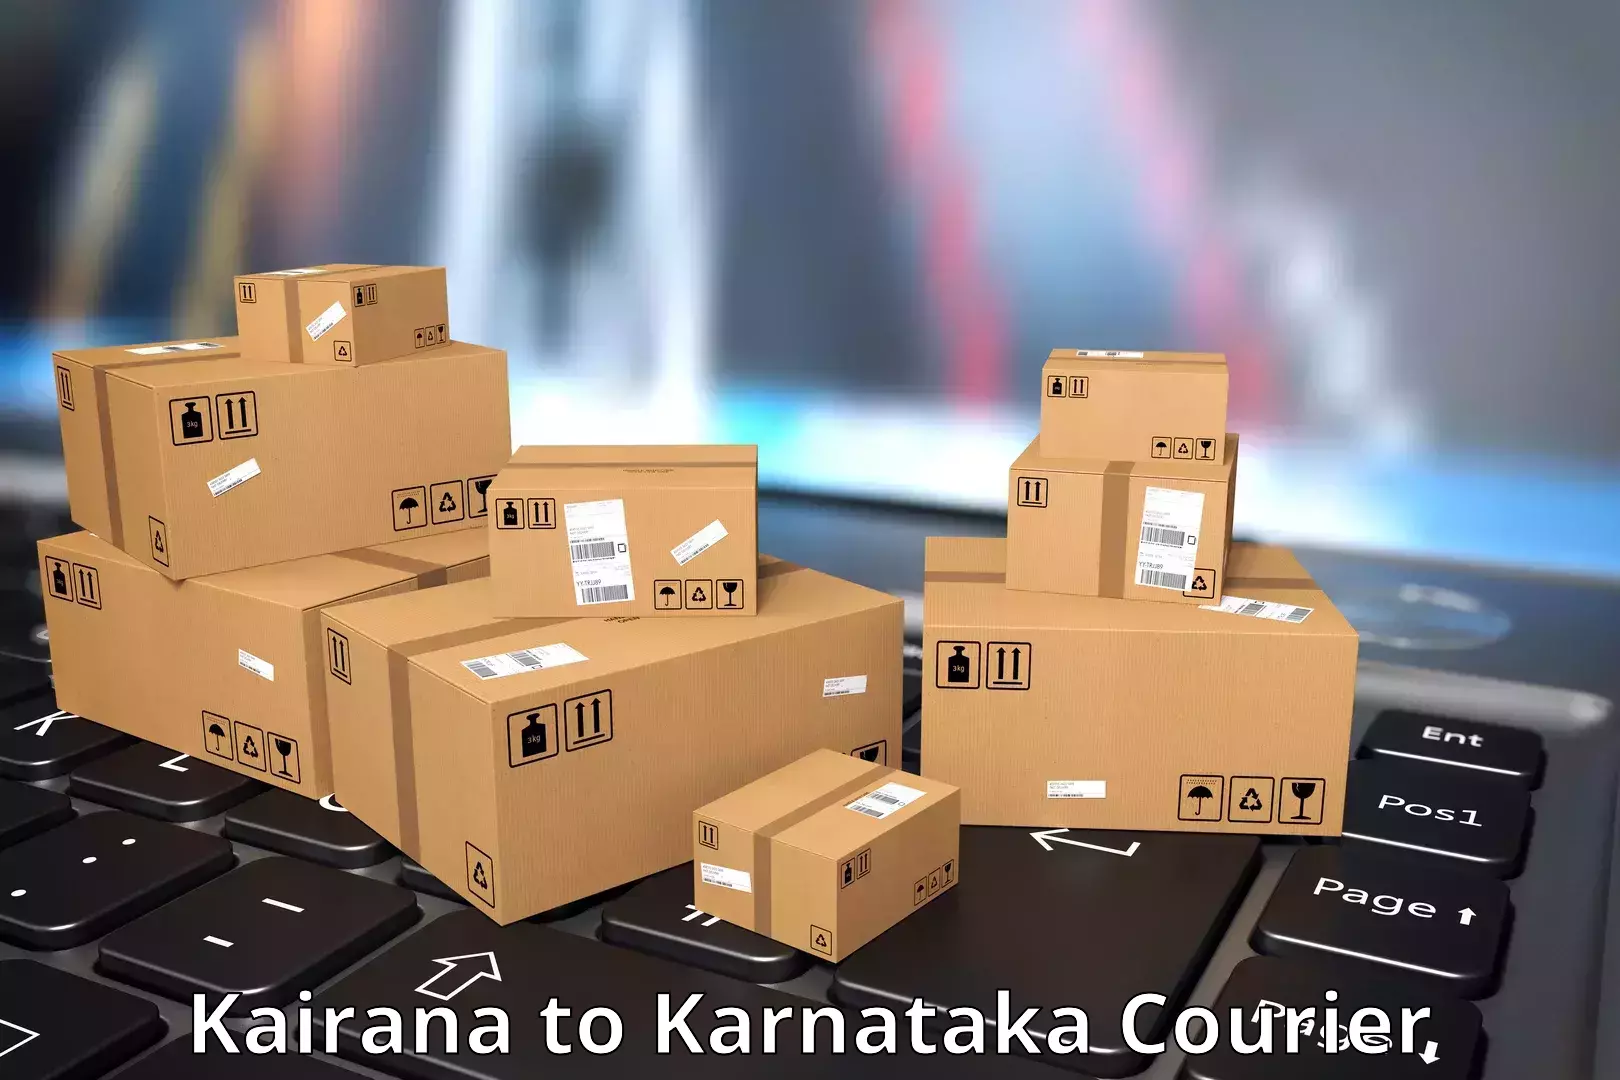 Doorstep delivery service Kairana to Ramanathapura